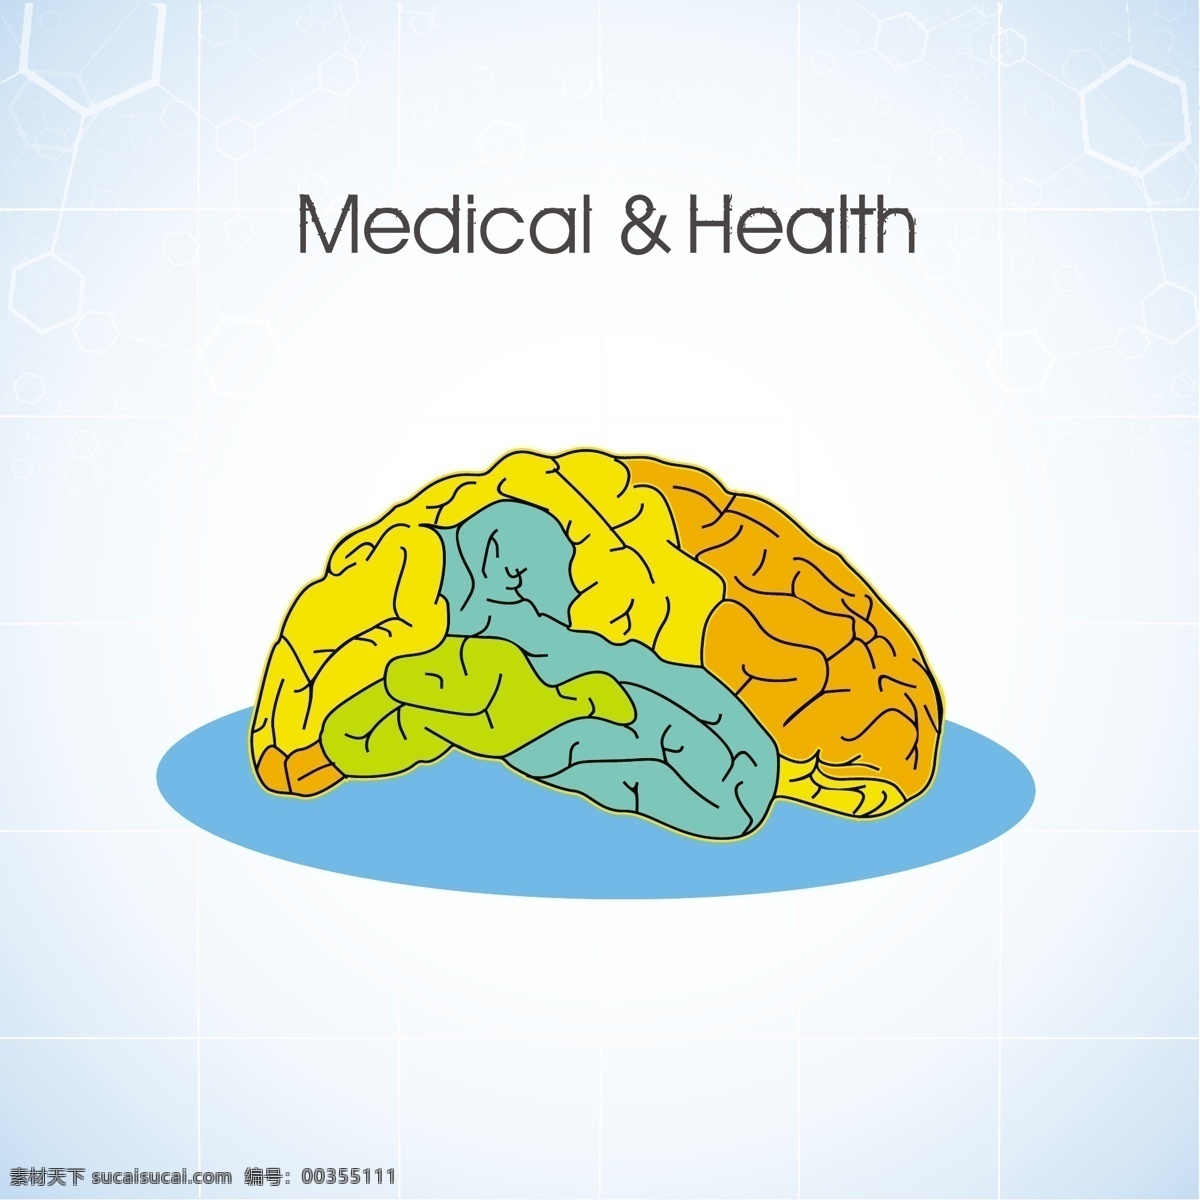 卡通大脑背景 卡通 大脑 背景 模板下载 卡通大脑 医学 医疗 医疗主题 医疗保健 行业标志 标志图标 矢量素材 白色